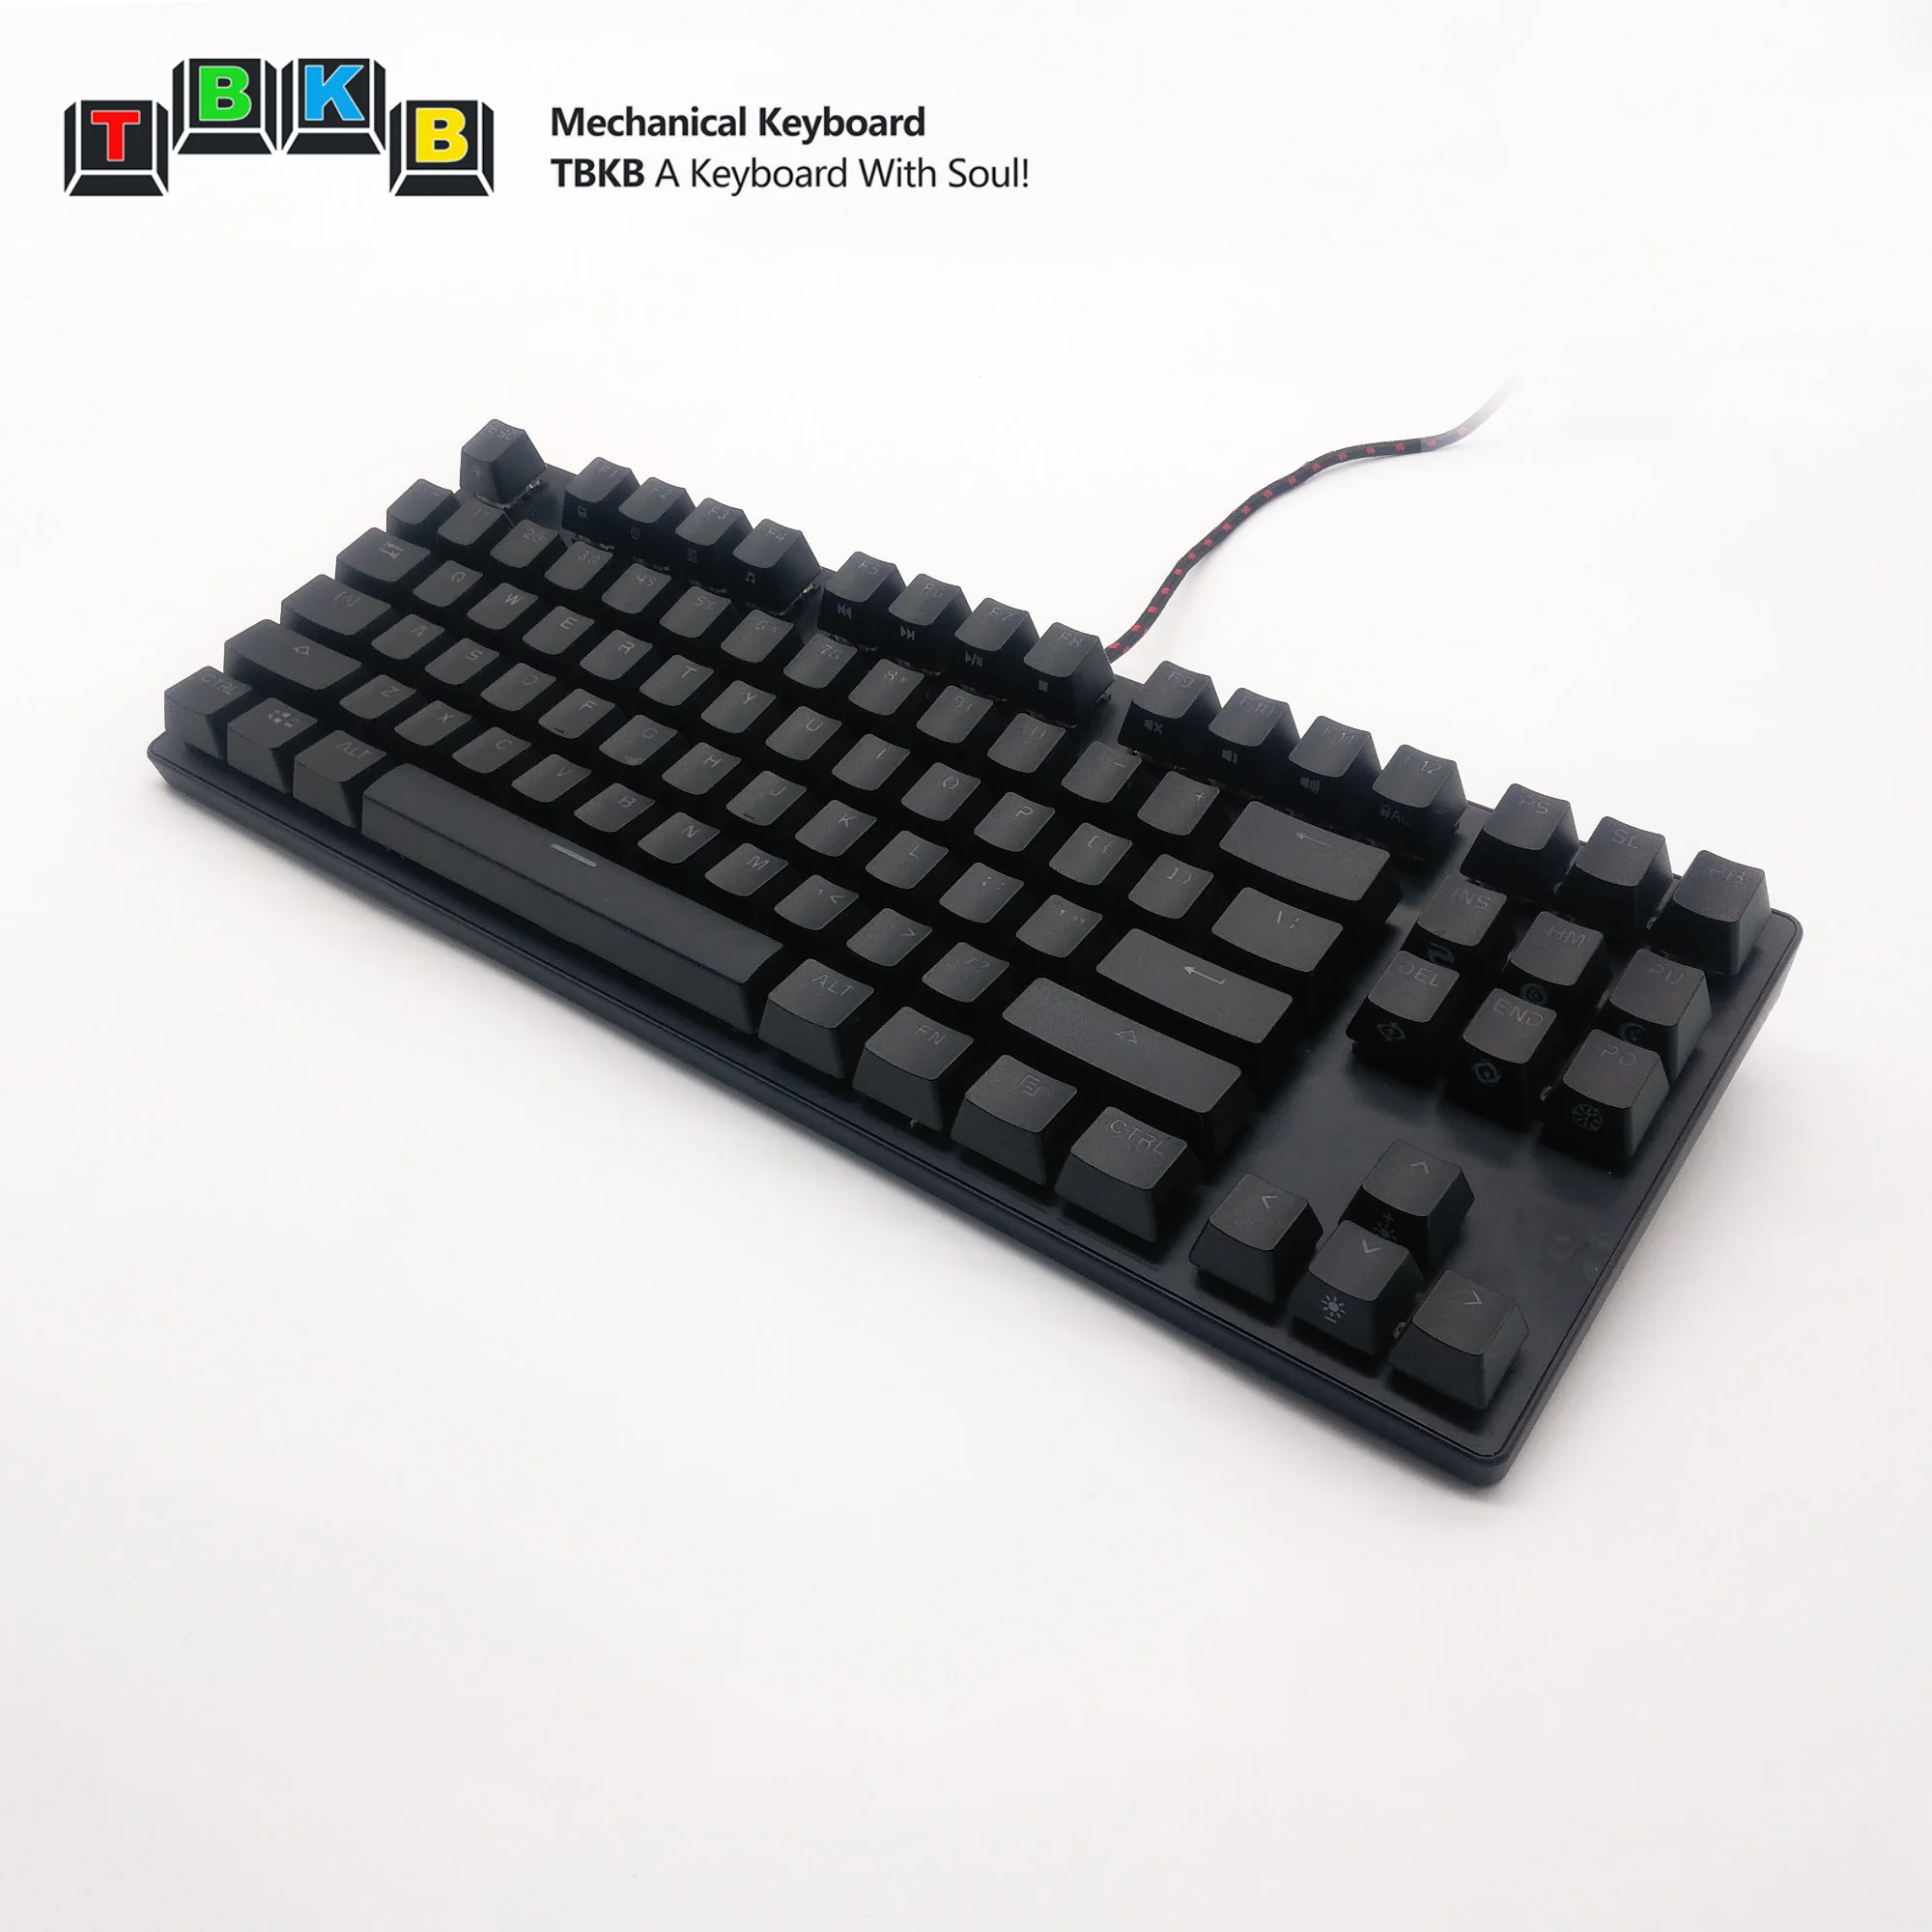 tbkb 87 键金属表面 rgb 背光 pbt 键帽机械键盘 